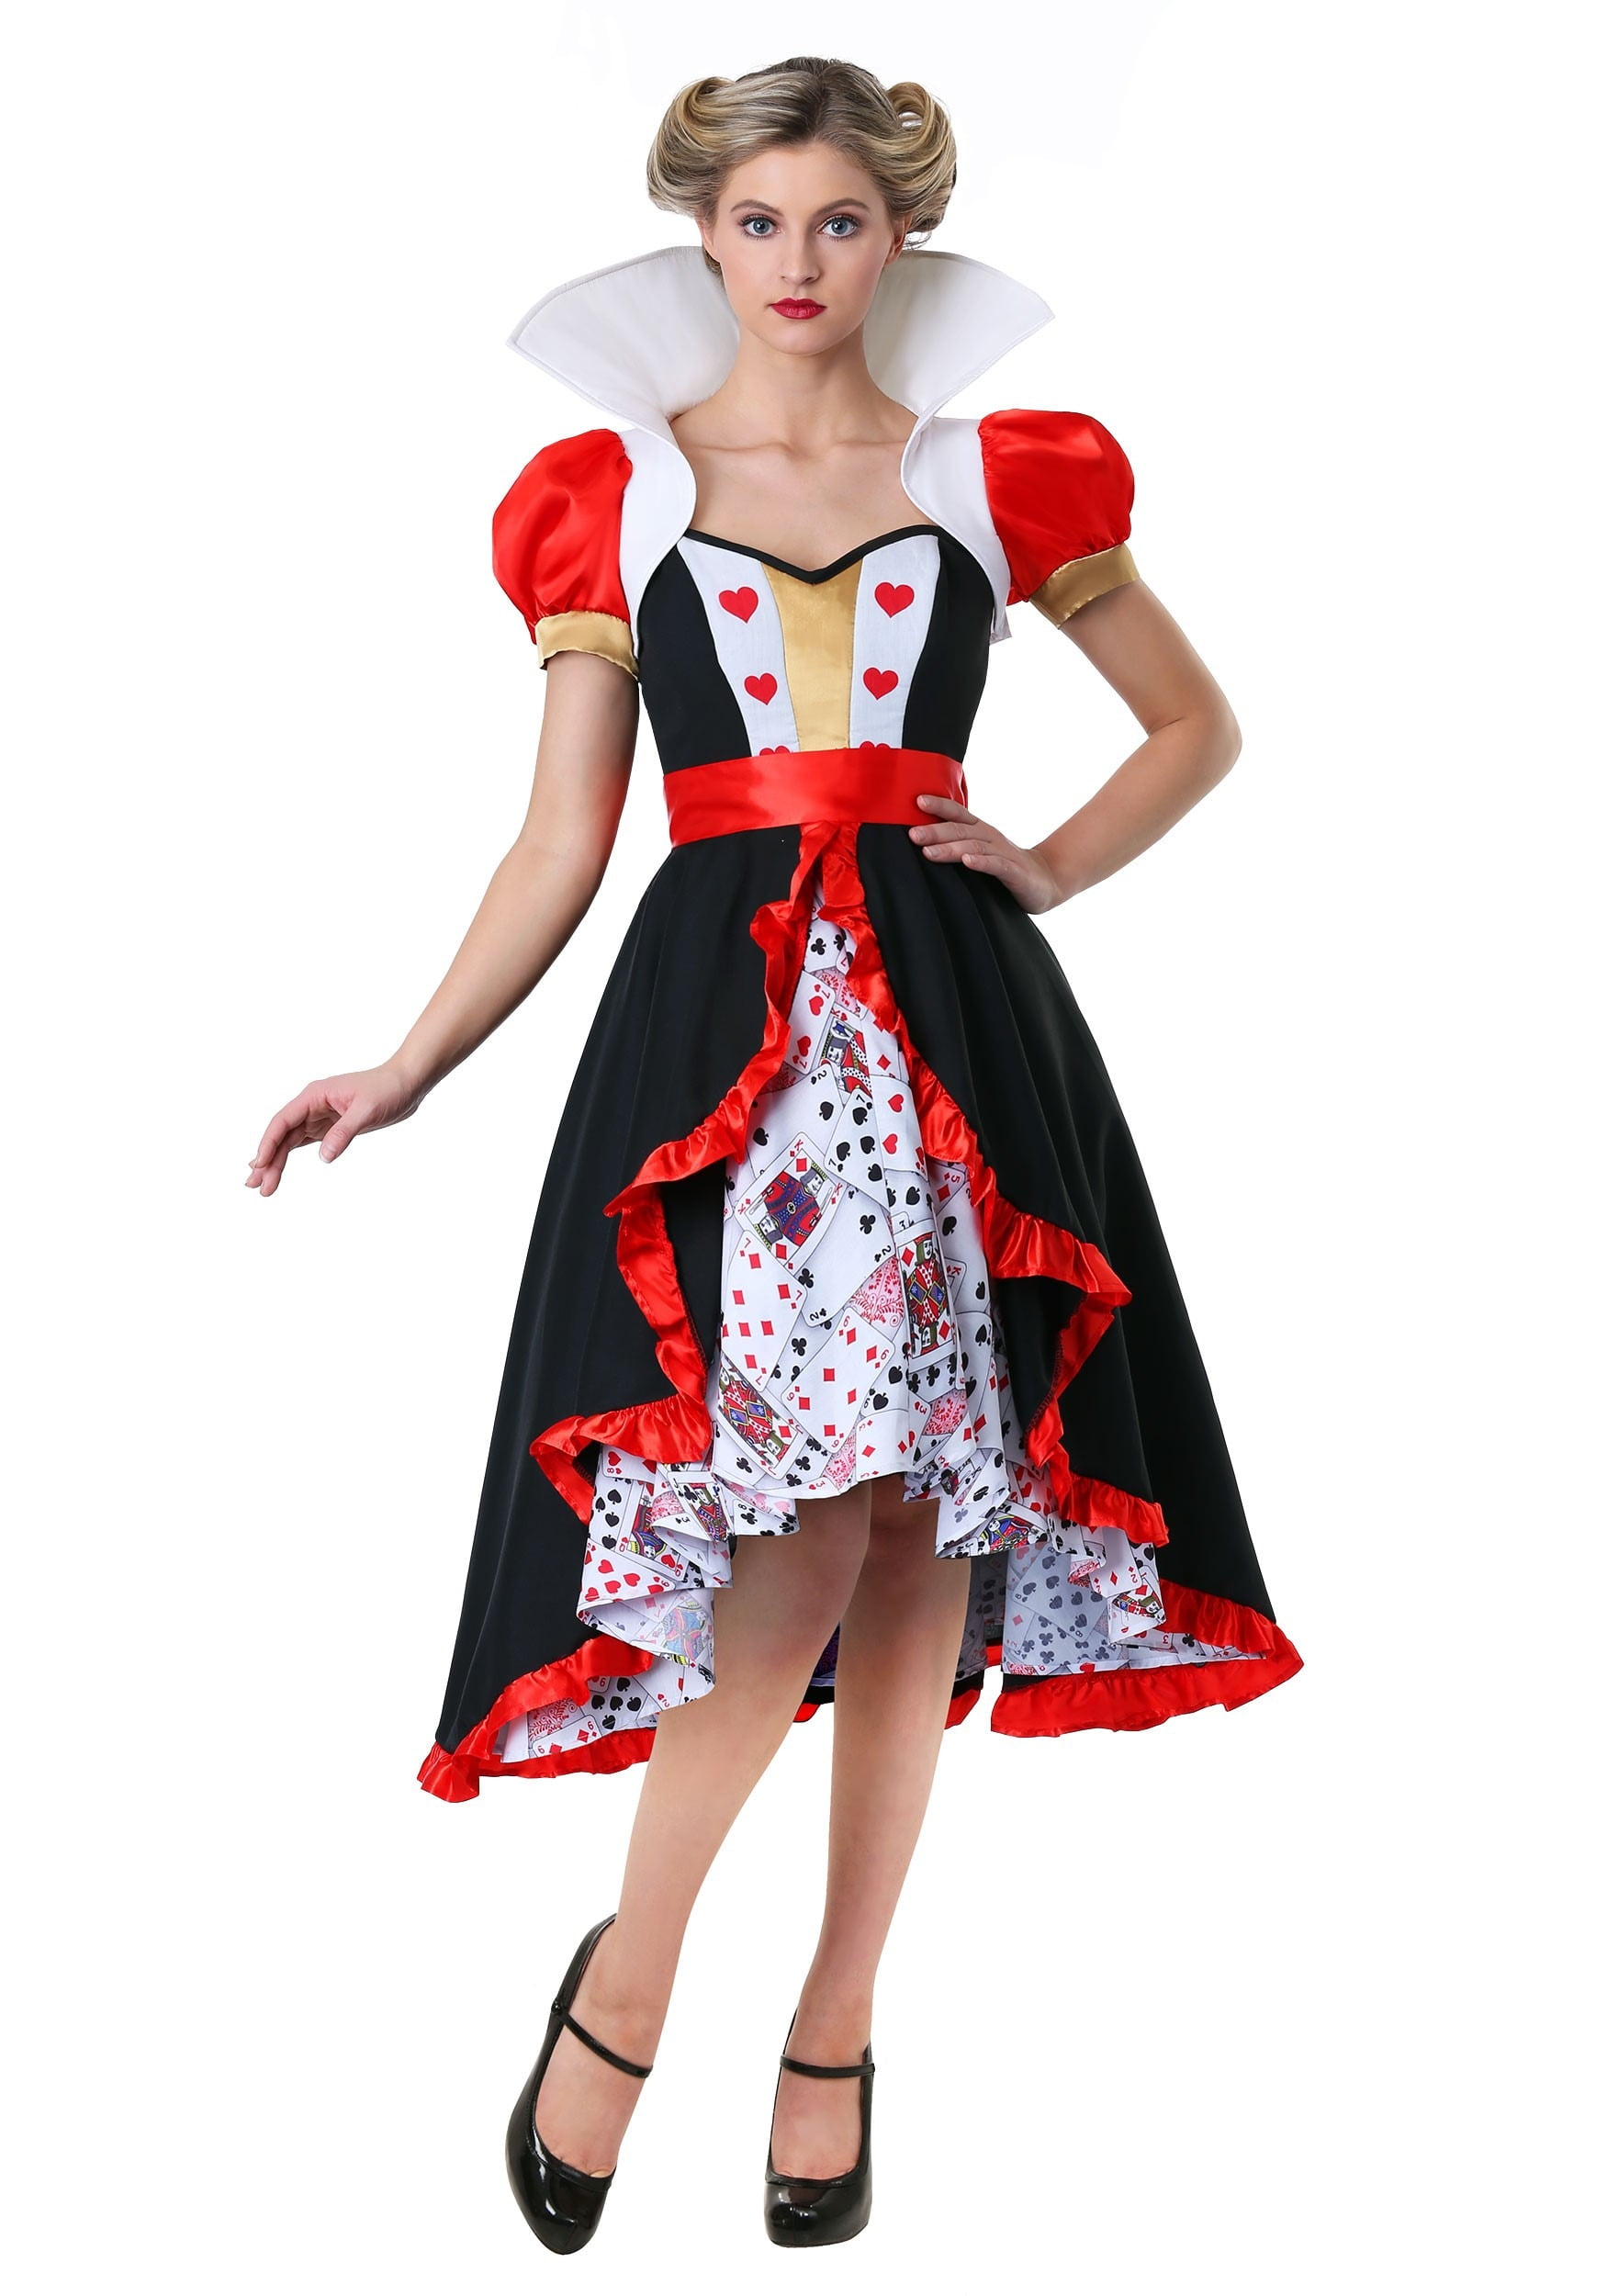 Women's Flirty Queen of Hearts Costume - Walmart.com